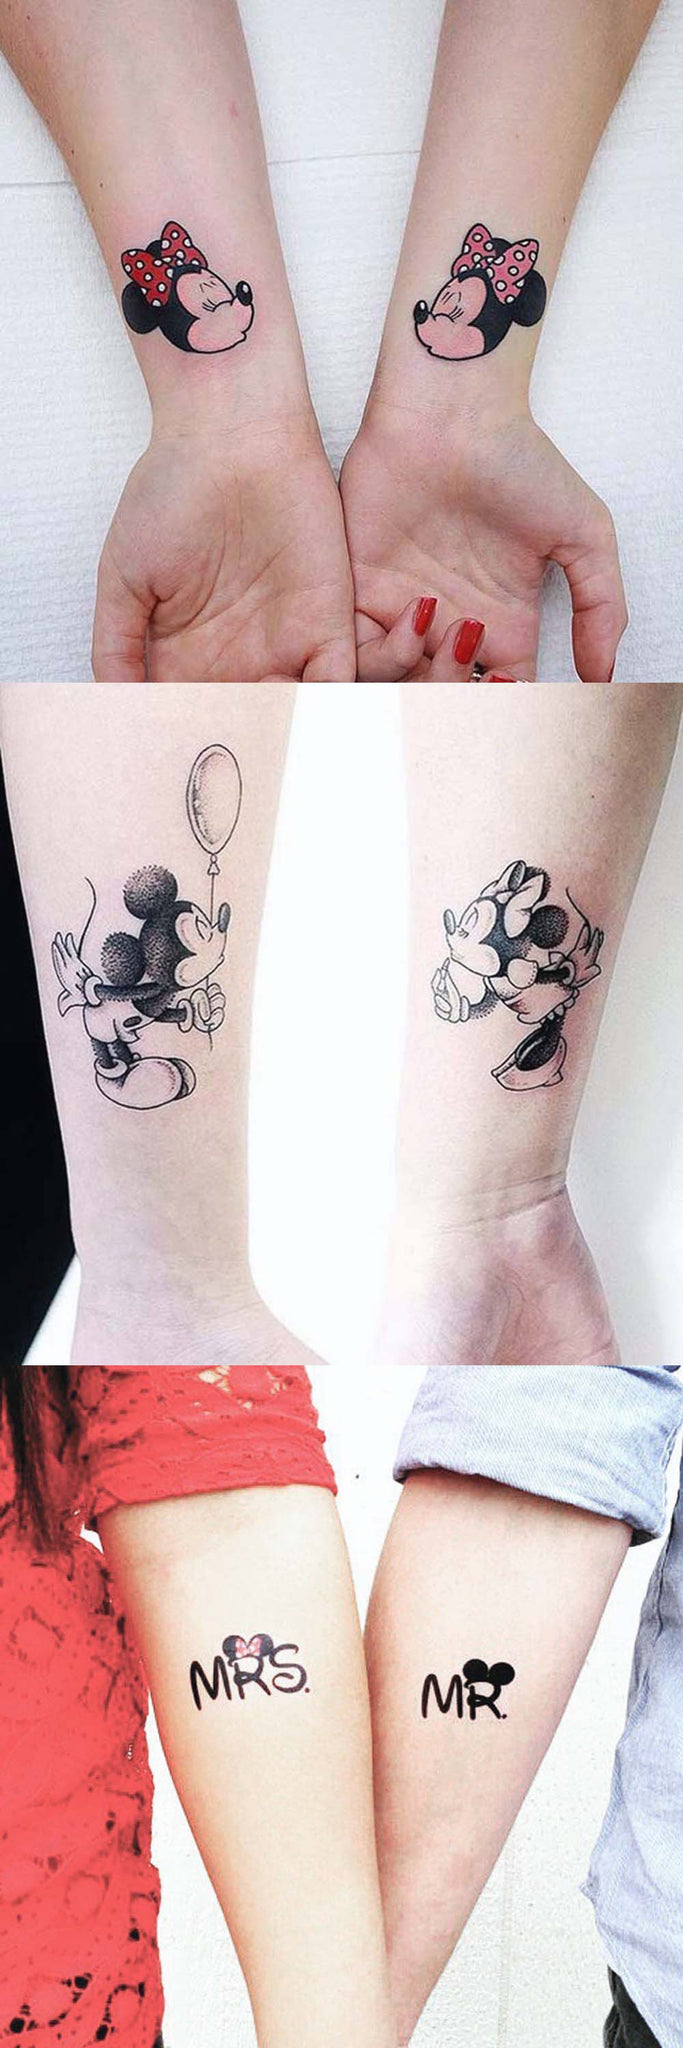 Mickey Mouse Couple Wrist Arm Tattoo Ideas for Boyfriend Girlfriend Minnie Mouse - www.MyBodiArt.com